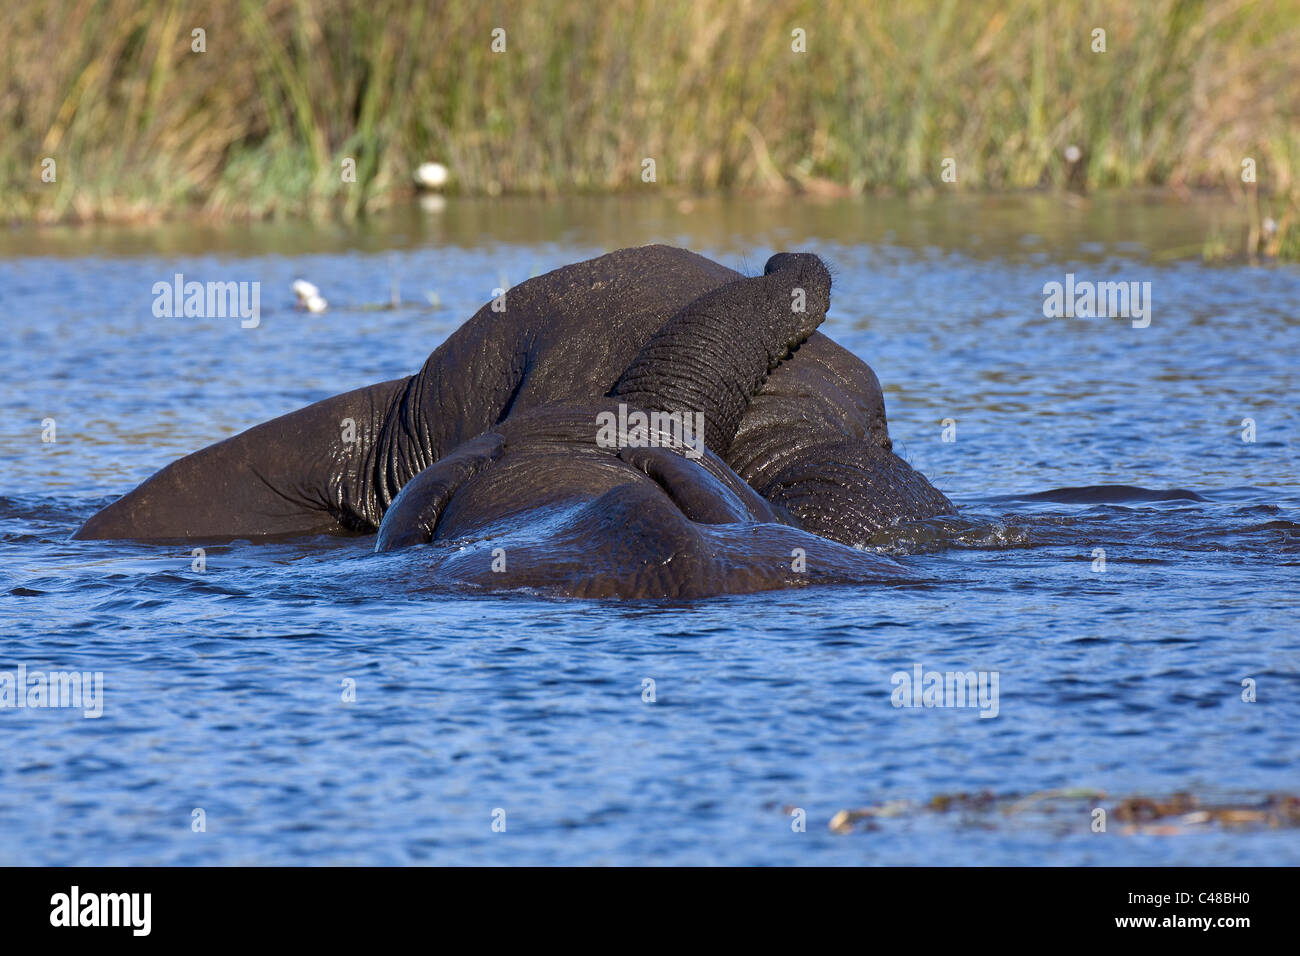 Afrikanische Elefanten (Loxodonta africana) beim Spielen im Wasser, Savuti, Botswana, Afrika Foto Stock